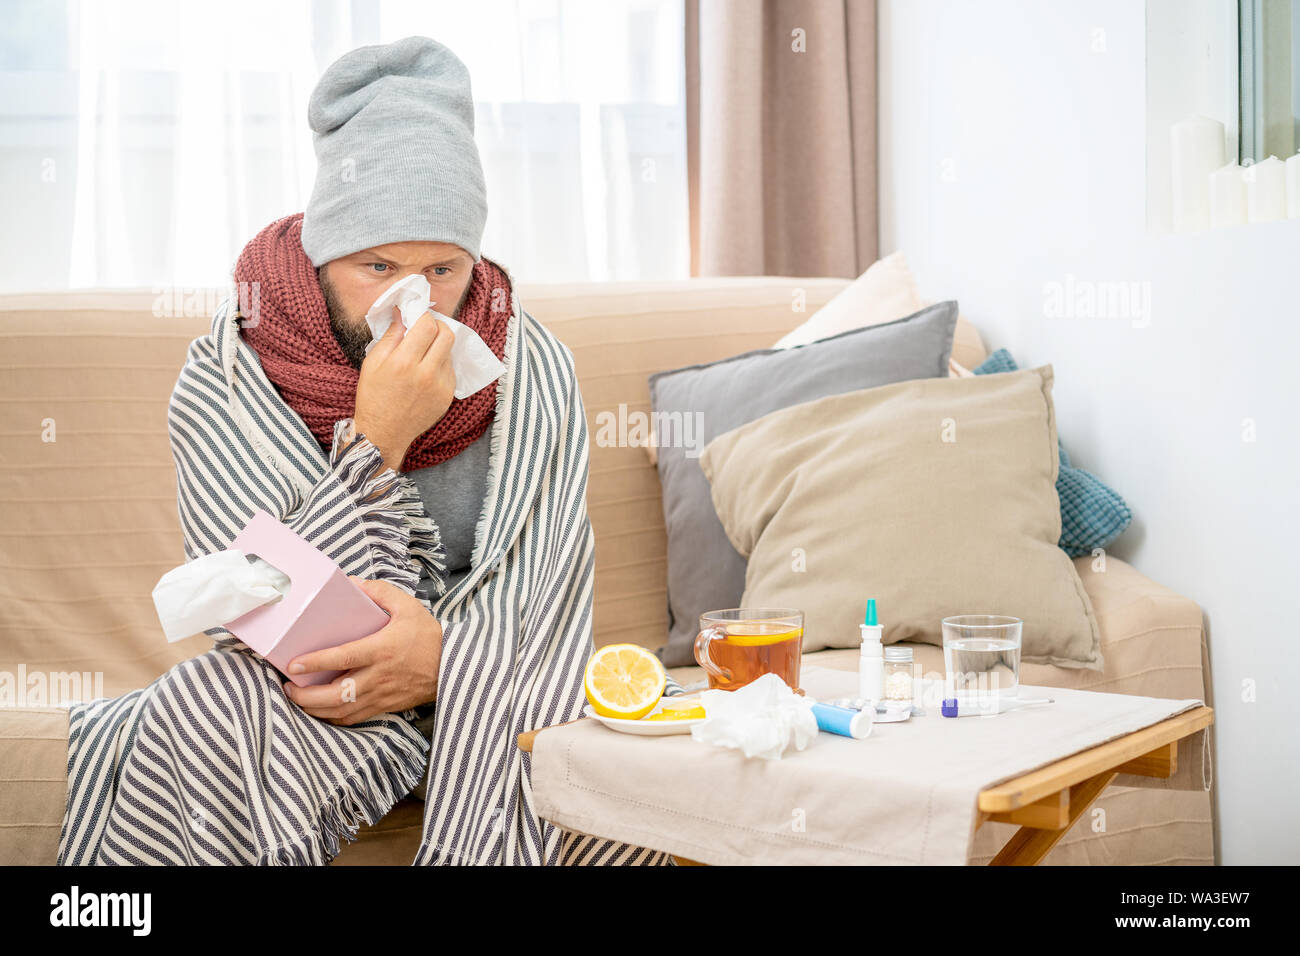 Uomo malato che indossa cappello e sciarpa grigi, che soffia il naso e starnutisce nel tessuto. I maschi hanno influenza, virus o allergia respiratoria. Sano, concetto di medicina Foto Stock